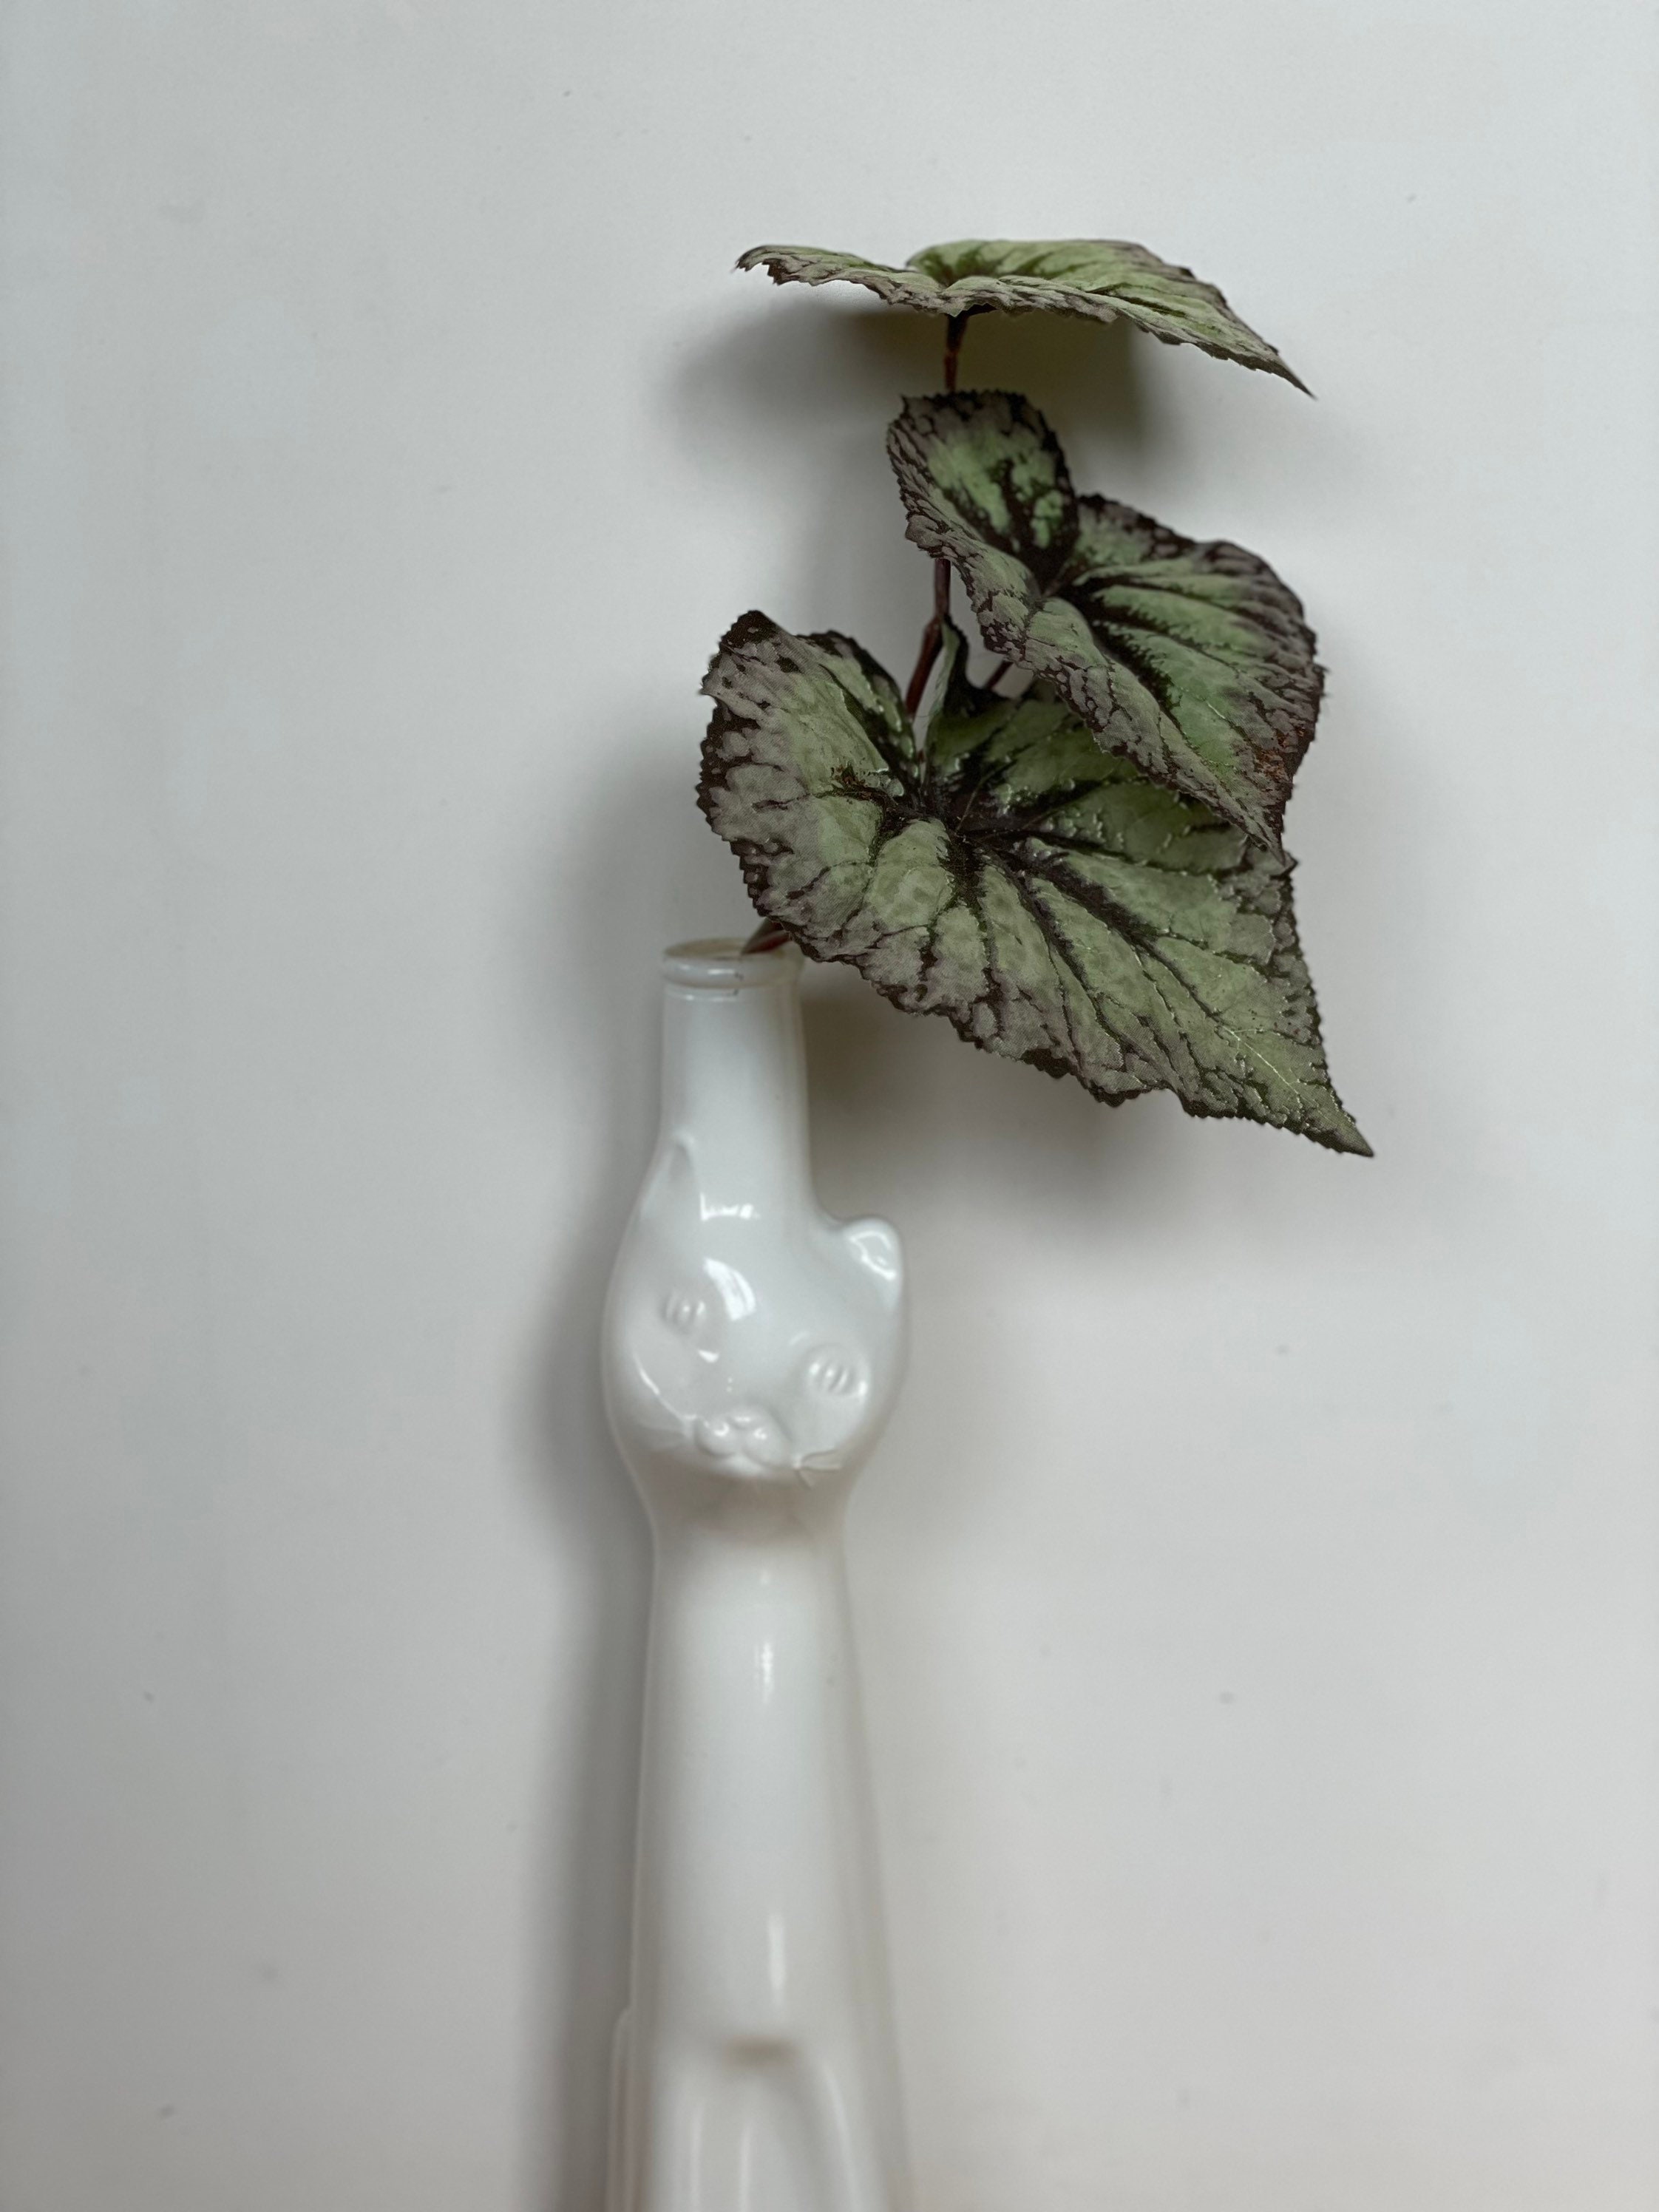 White Pottery Kitty Sculpture Vintage Art Artwork White Cat Bottle Feline Friend Gift Glazed Ceramic